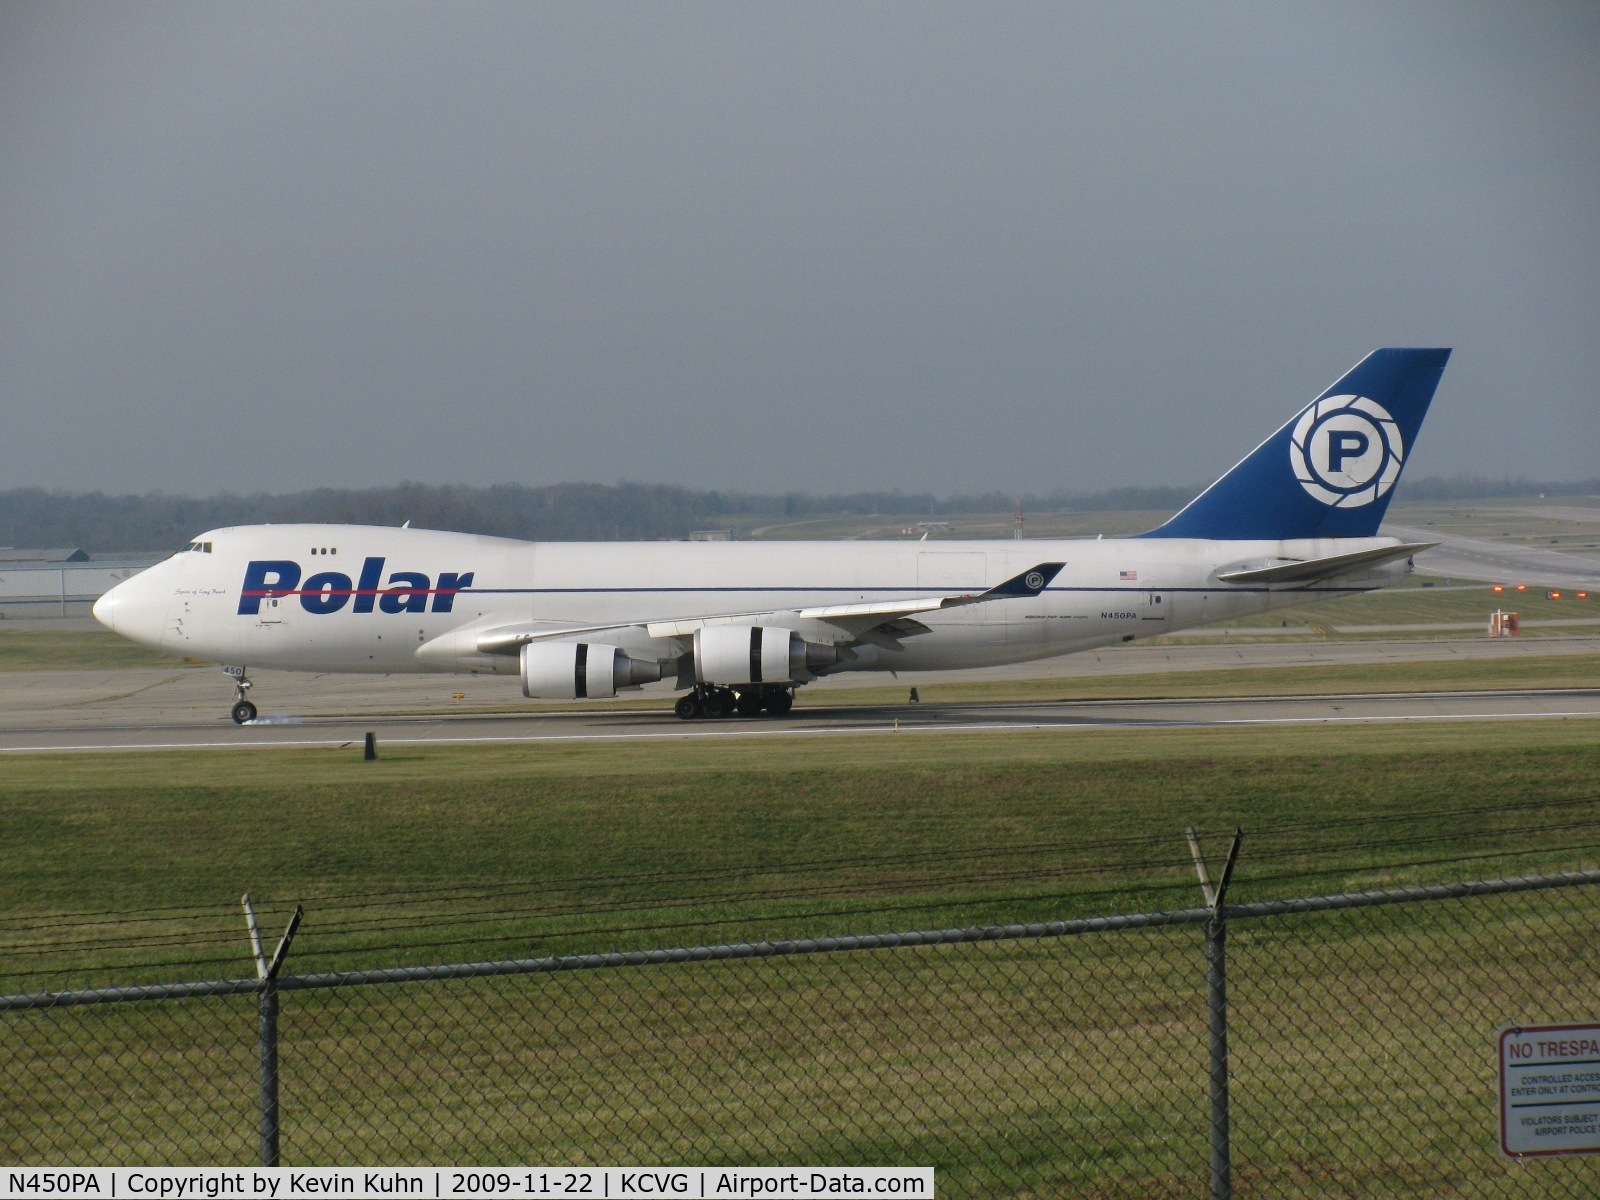 N450PA, 2000 Boeing 747-46NF C/N 30808, Nosewheel touchdown